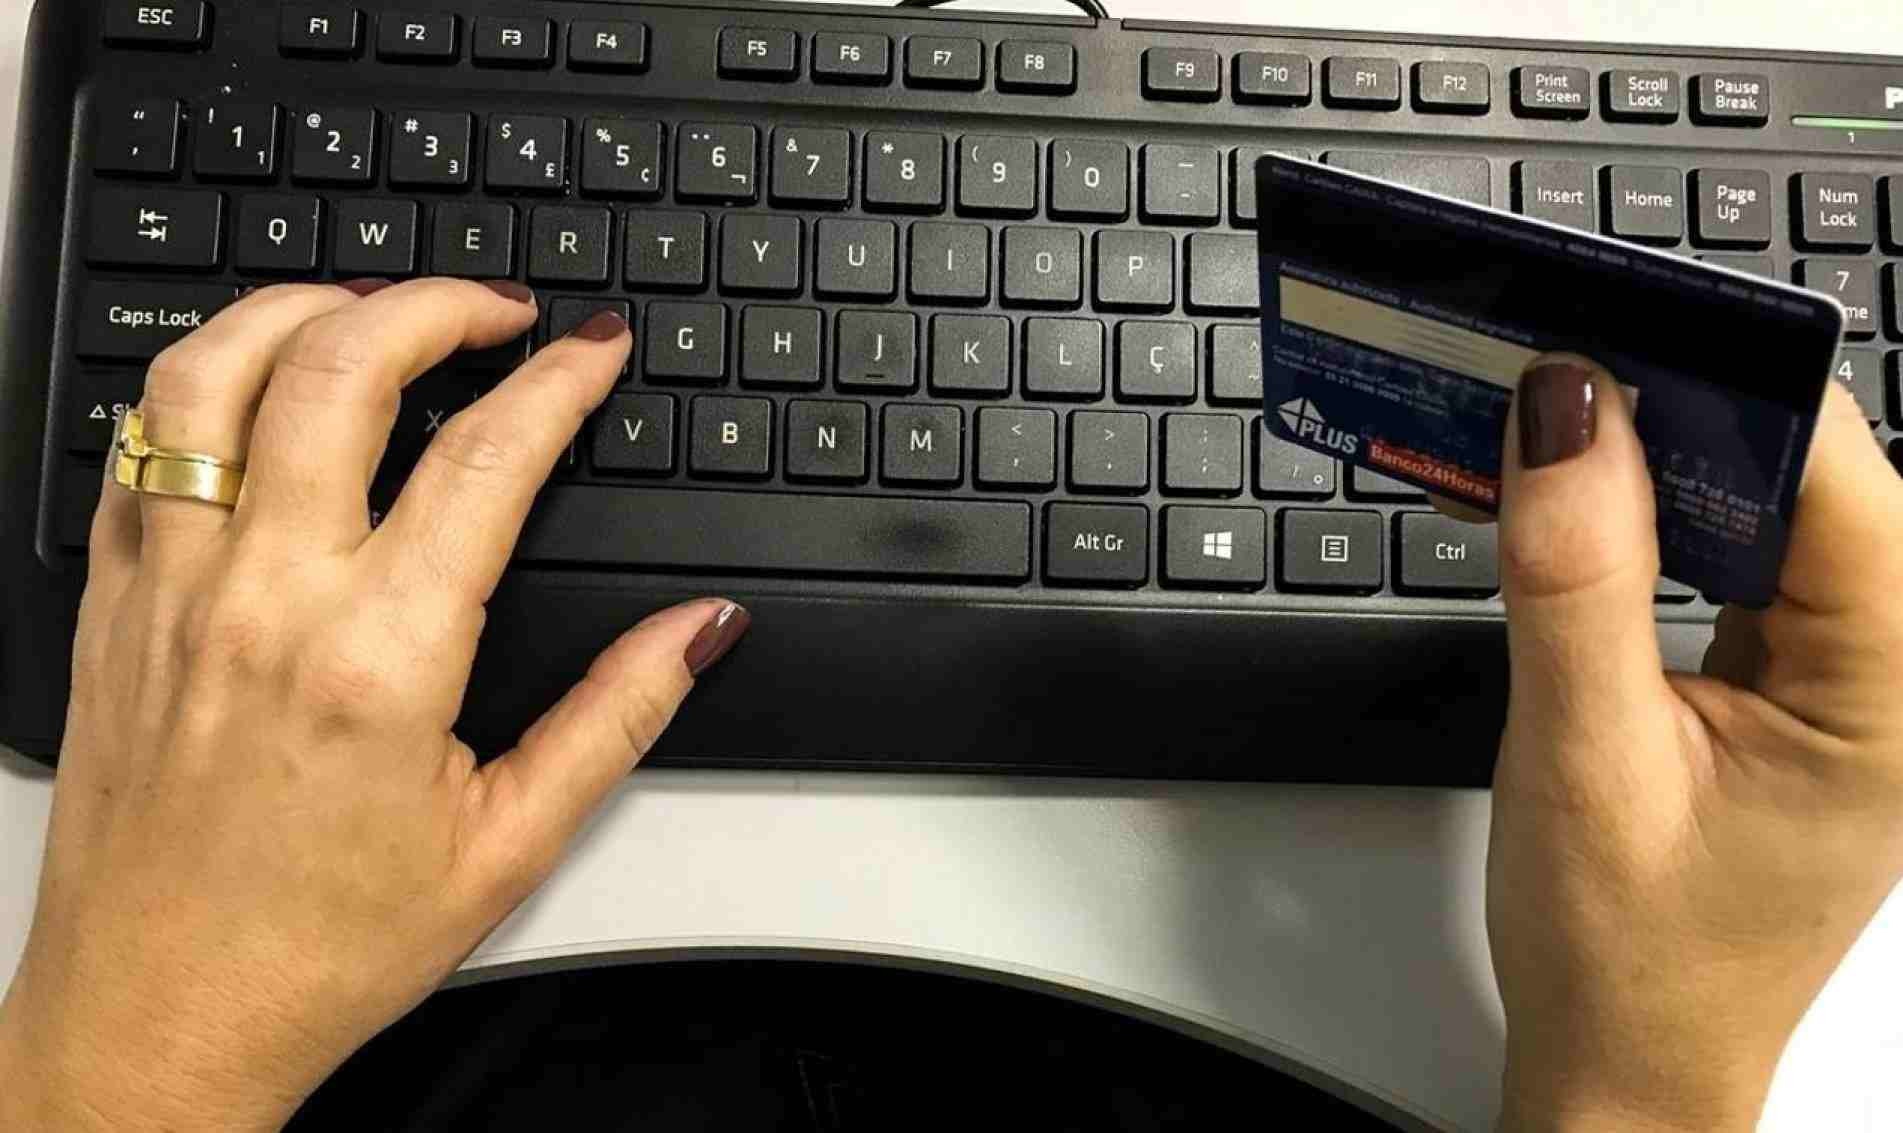 Parcelamento será a opção de 69% dos consumidores para pagamento. Já 38% utilizarão o cartão de crédito, 25% o cartão de débito e dinheiro e 12% optarão pelo Pix.